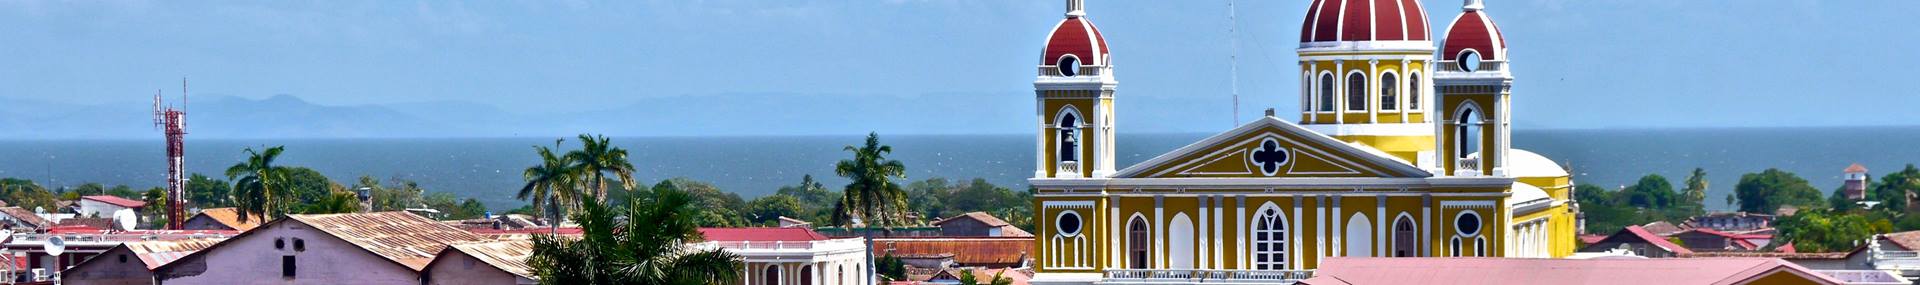 Reizen naar Nicaragua